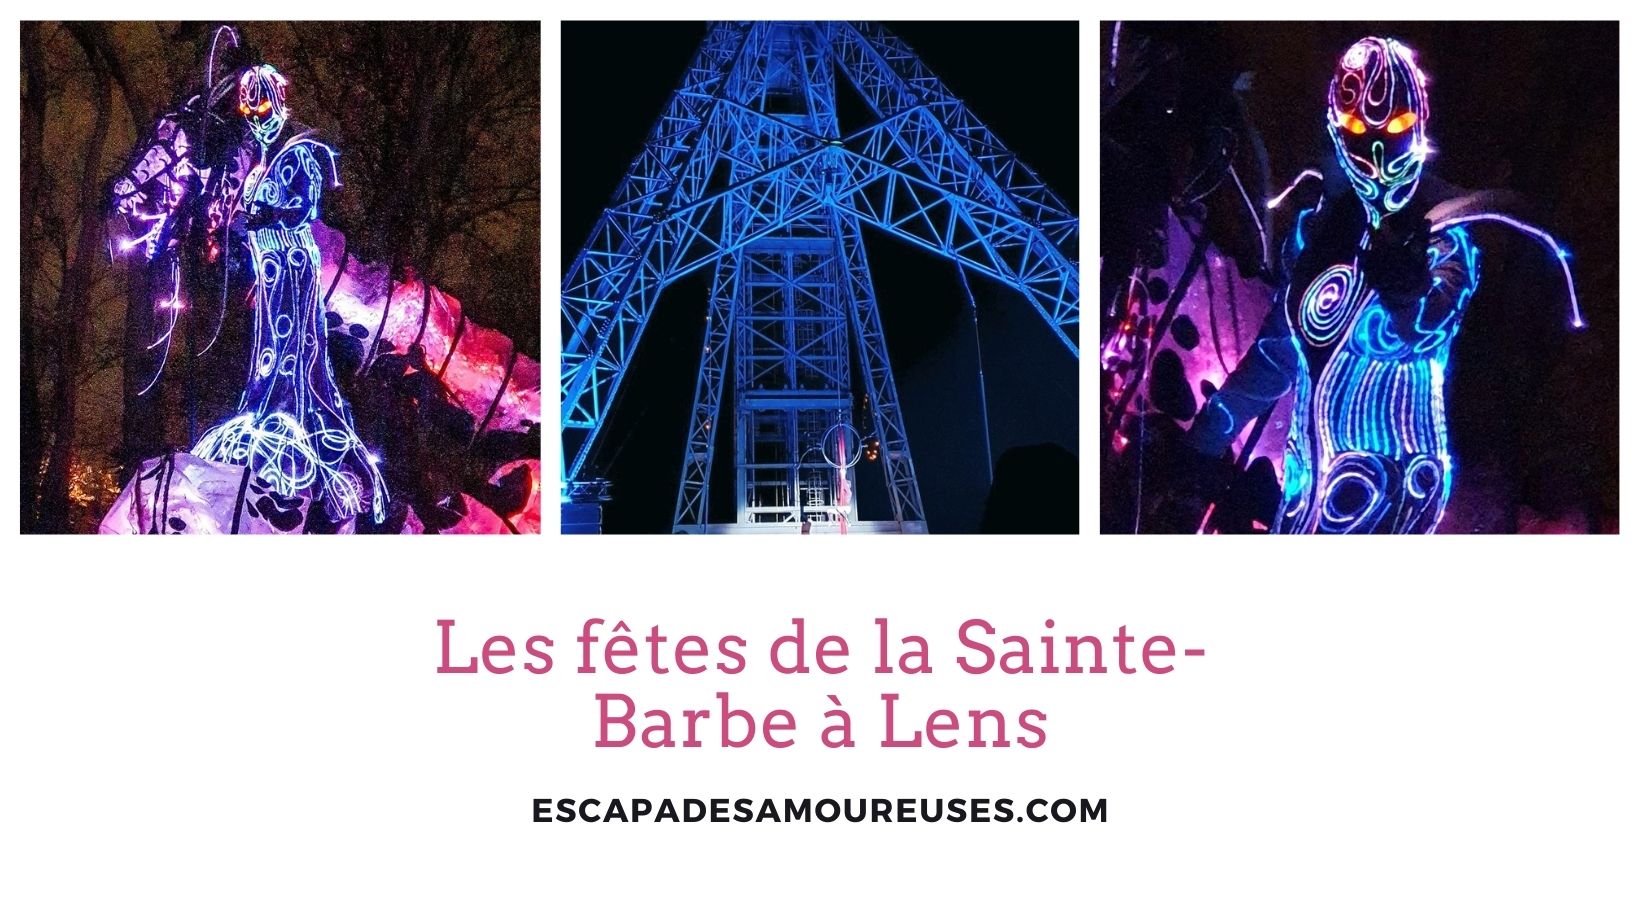 Les fêtes de la Sainte-Barbe à Lens 2021